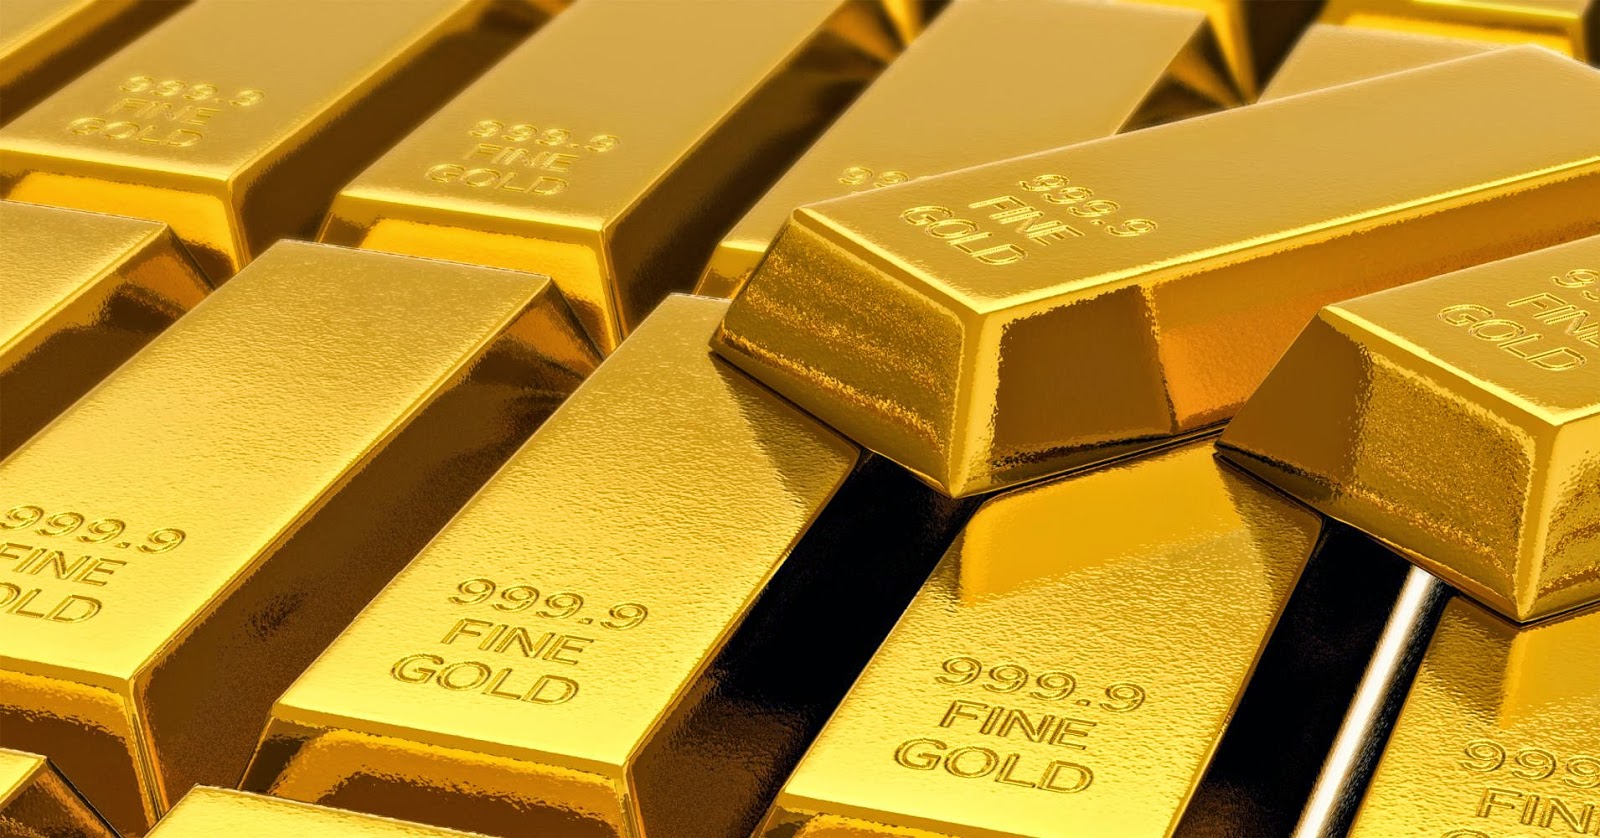 سعر الذهب اليوم الثلاثاء 30 4 2019 يشهد ارتفاع ا بسيط ا على صعيد